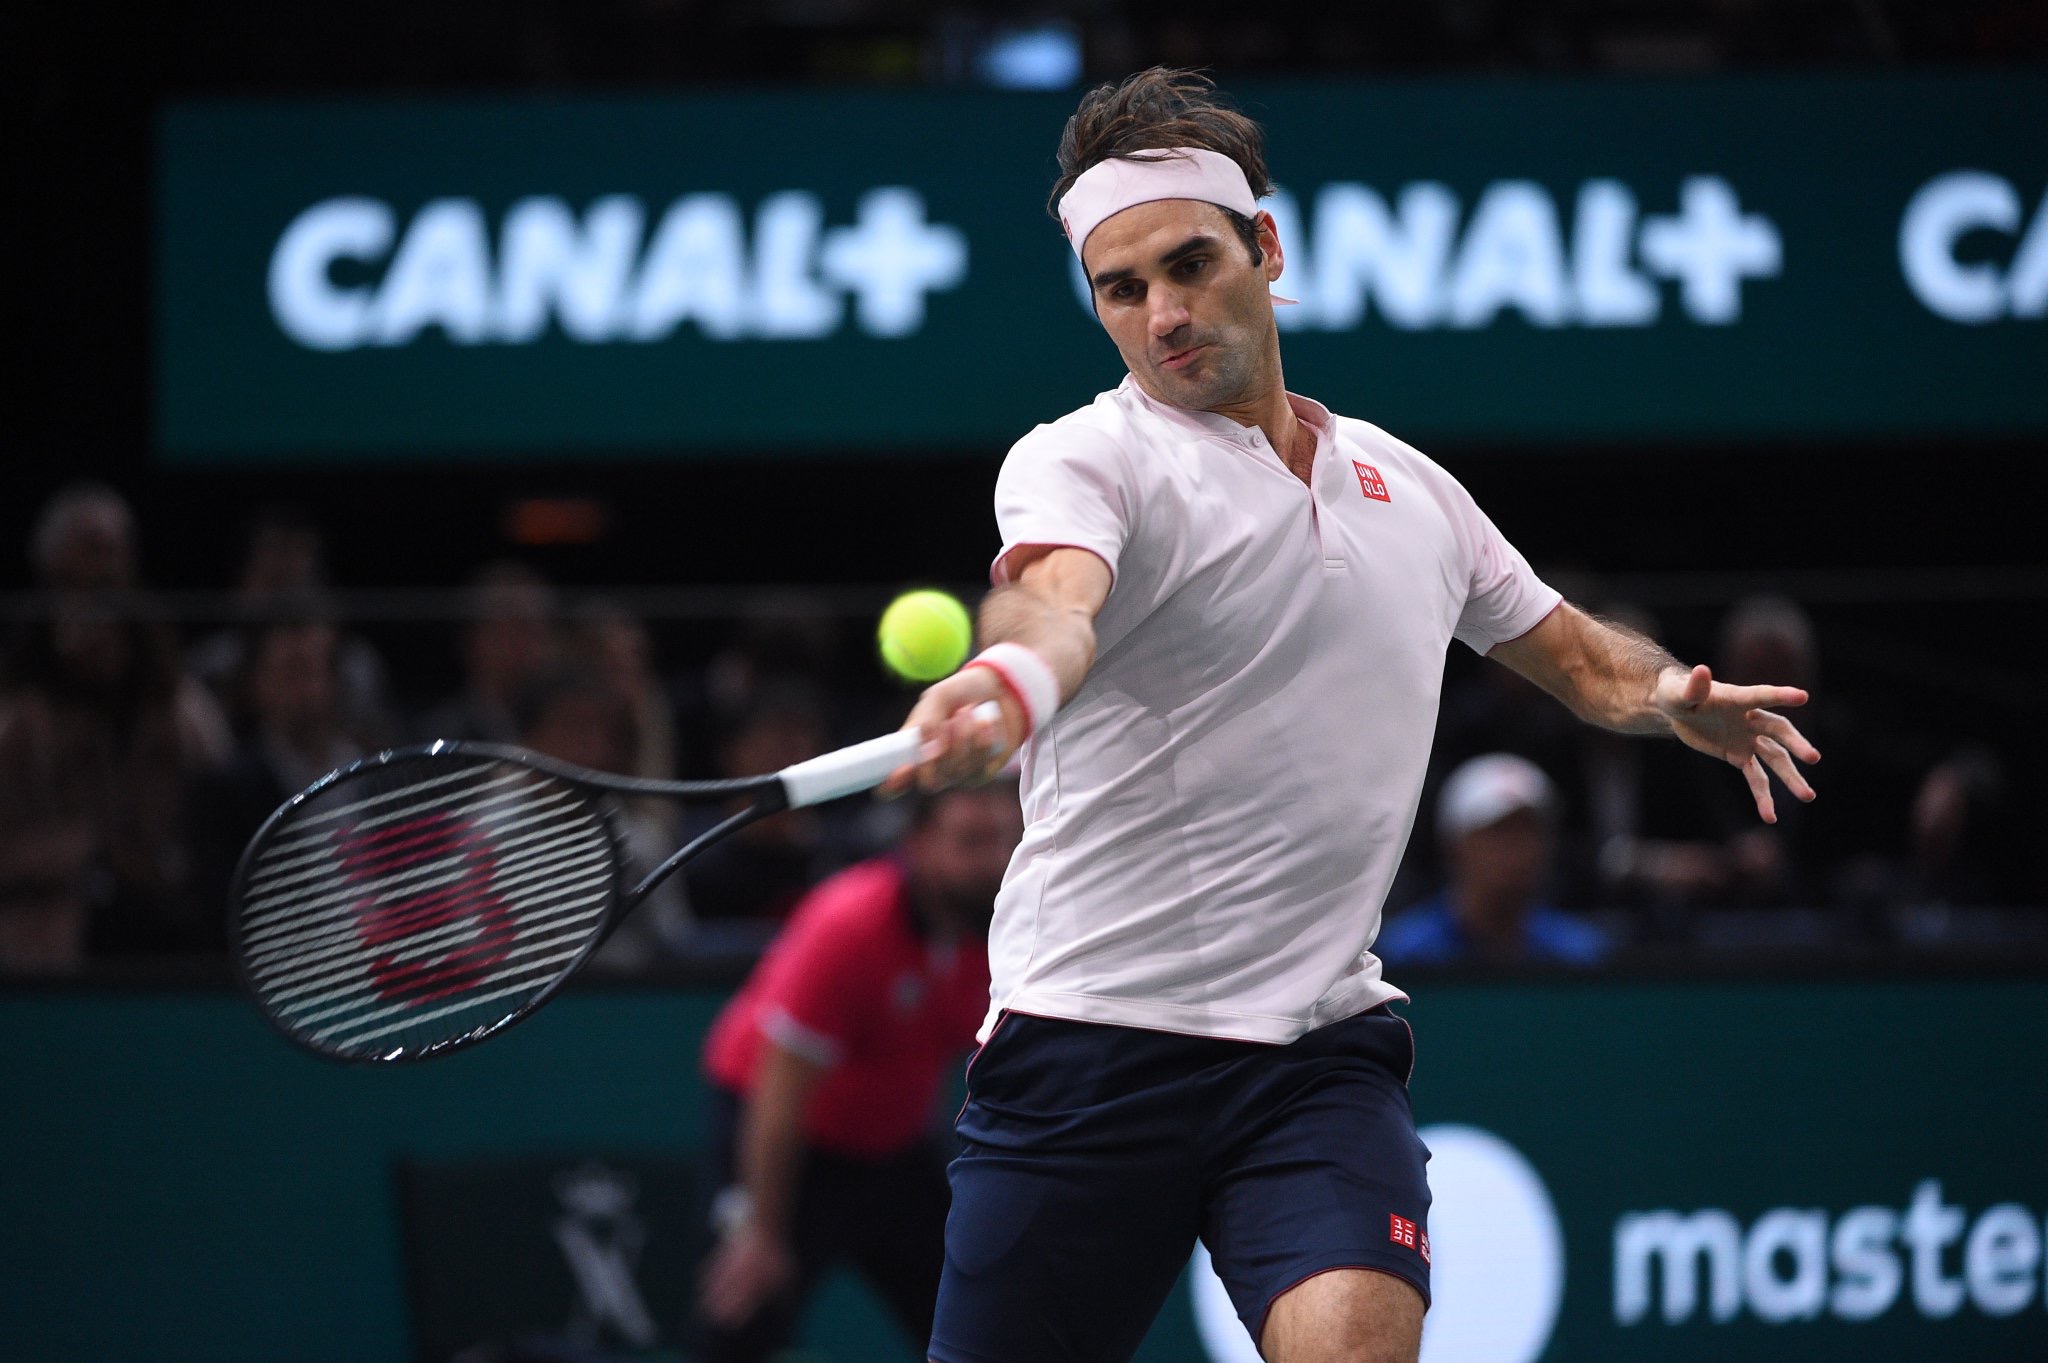 Federer Advances to Paris Masters Semifinals